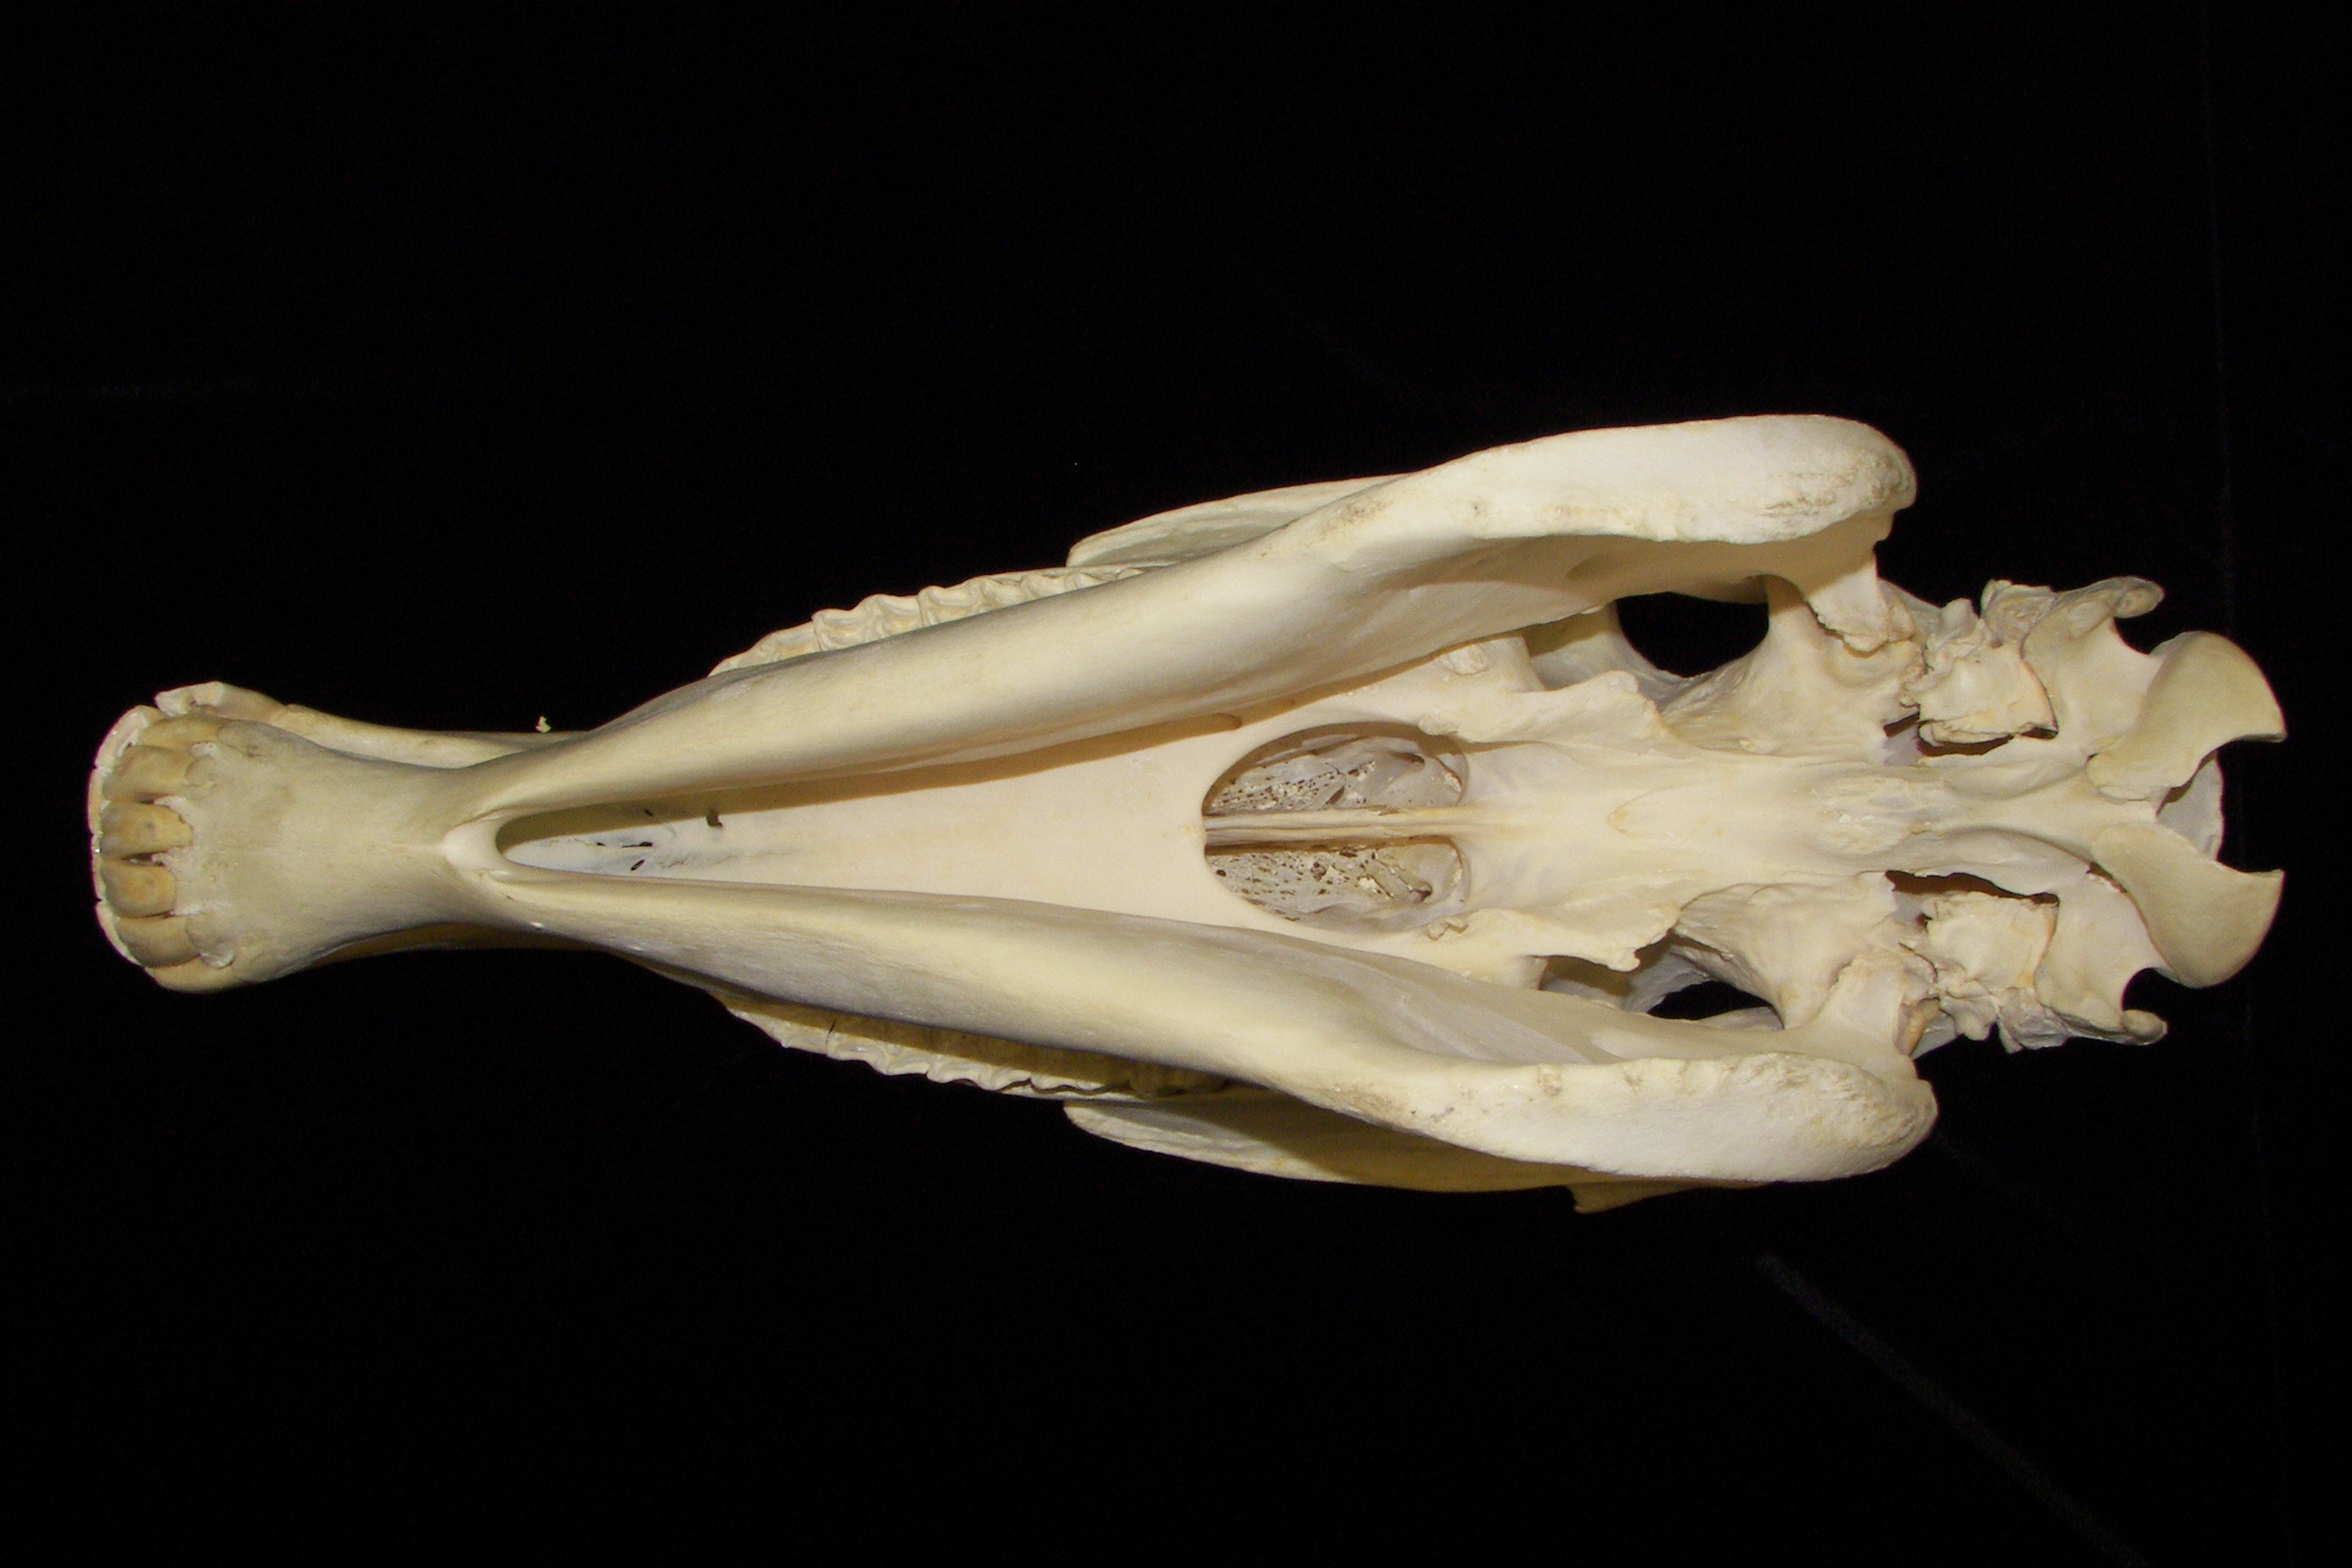 Horse (Equus caballus) skull, inferior view